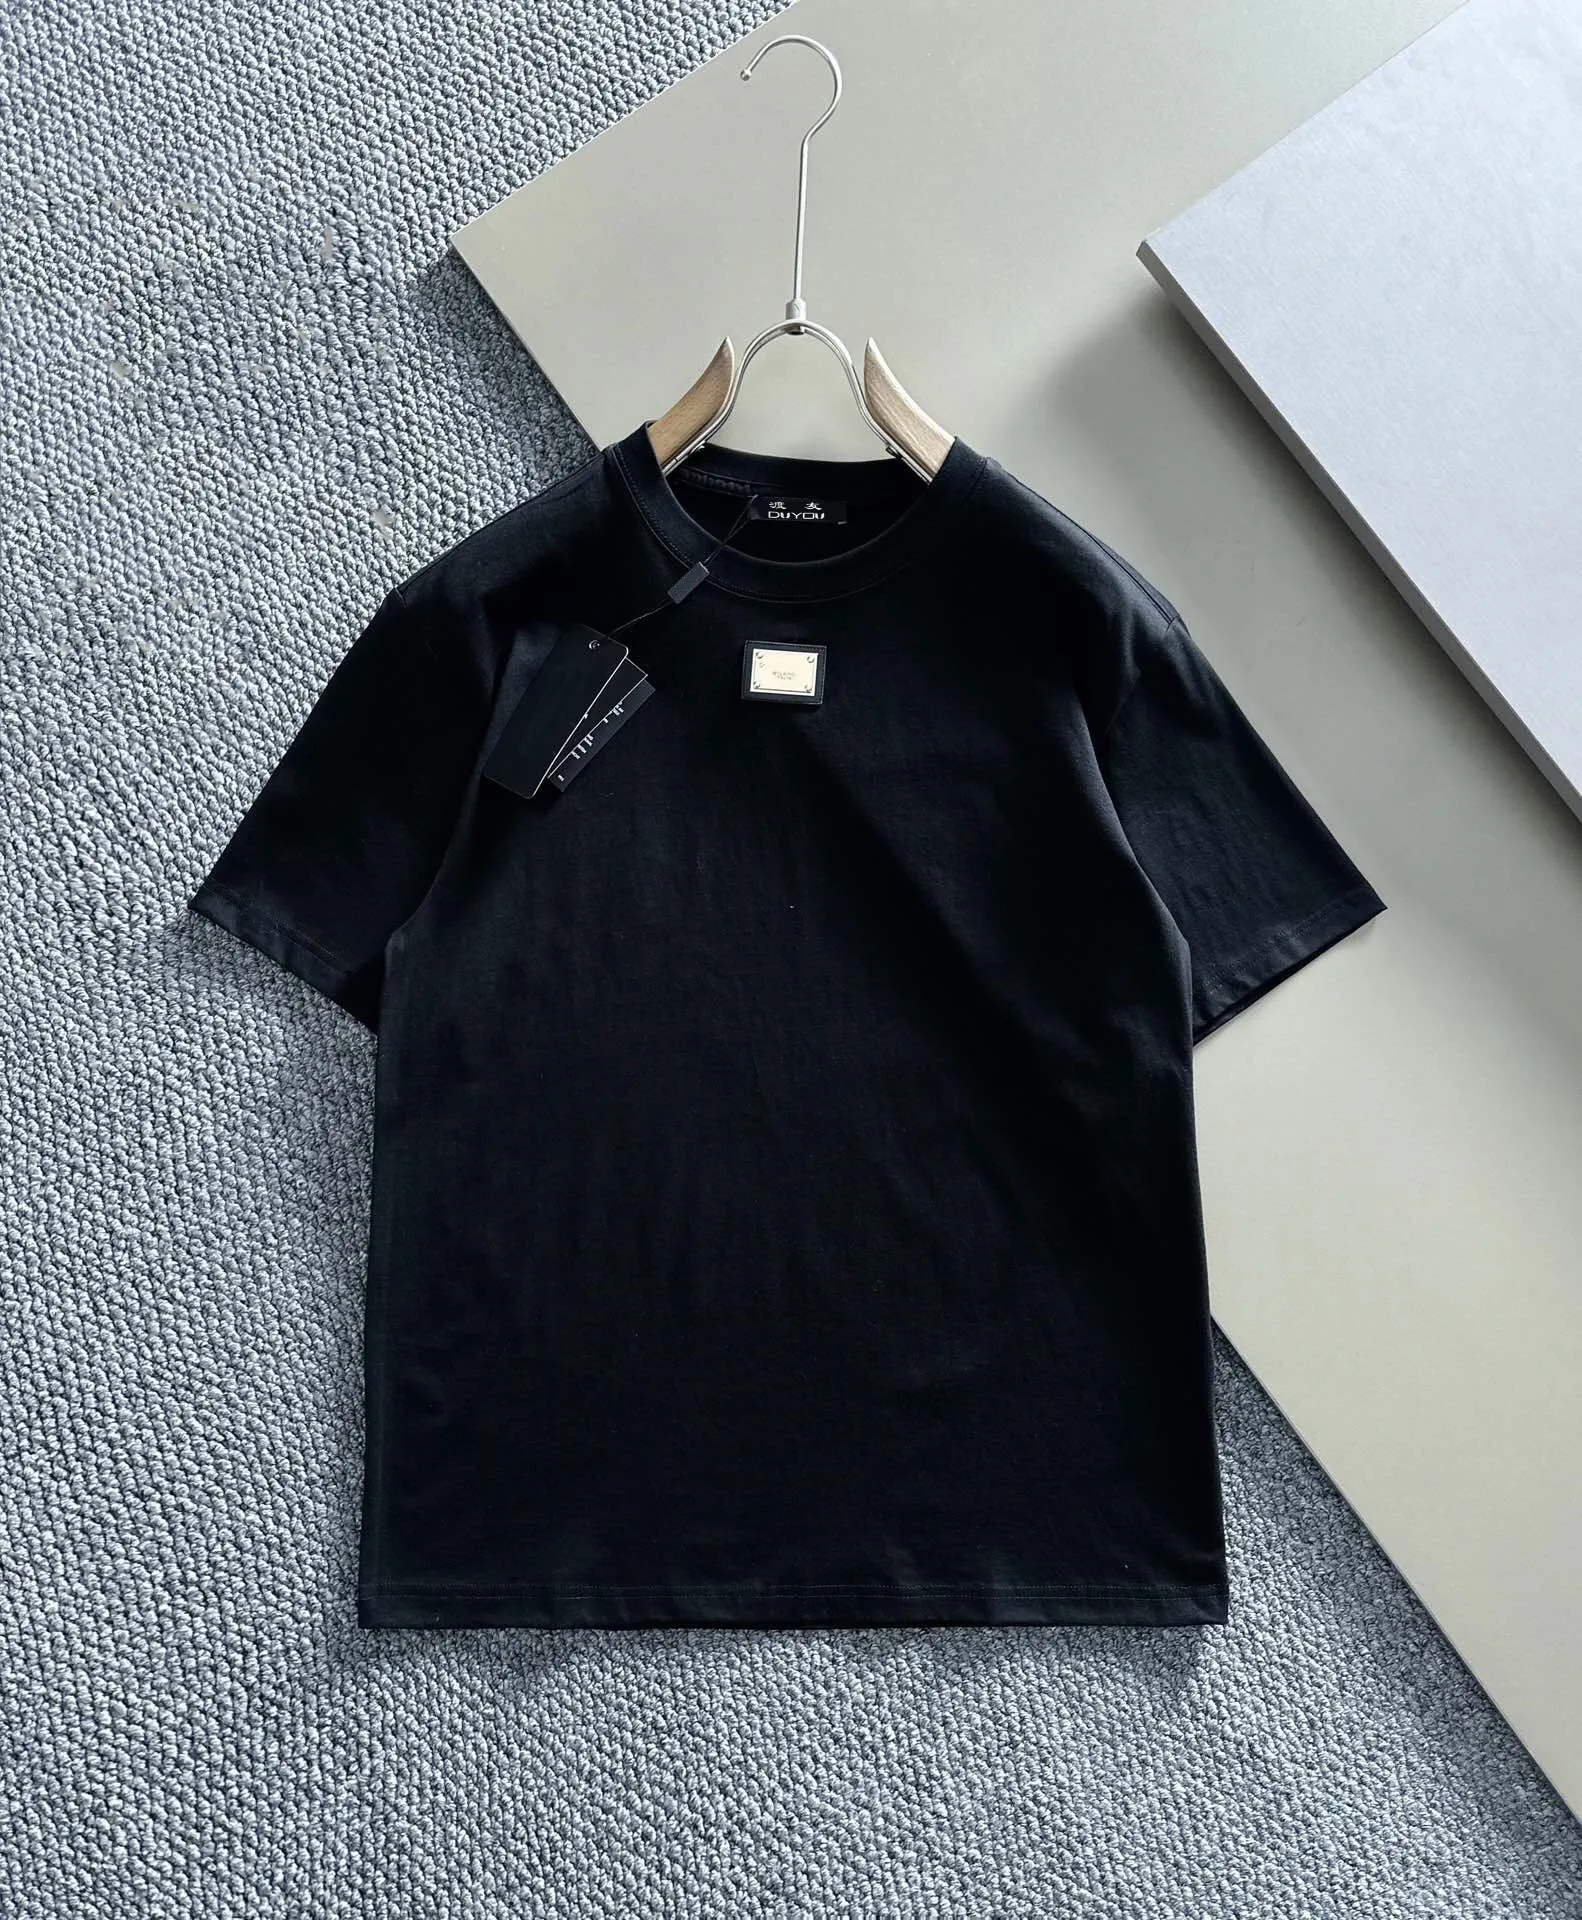 DUYOU T-shirt surdimensionné avec des lettres de lavage en jersey vintage T-shirt 100% coton Hommes Casuals T-shirts de base Femmes Qualité Tops classiques DY8976